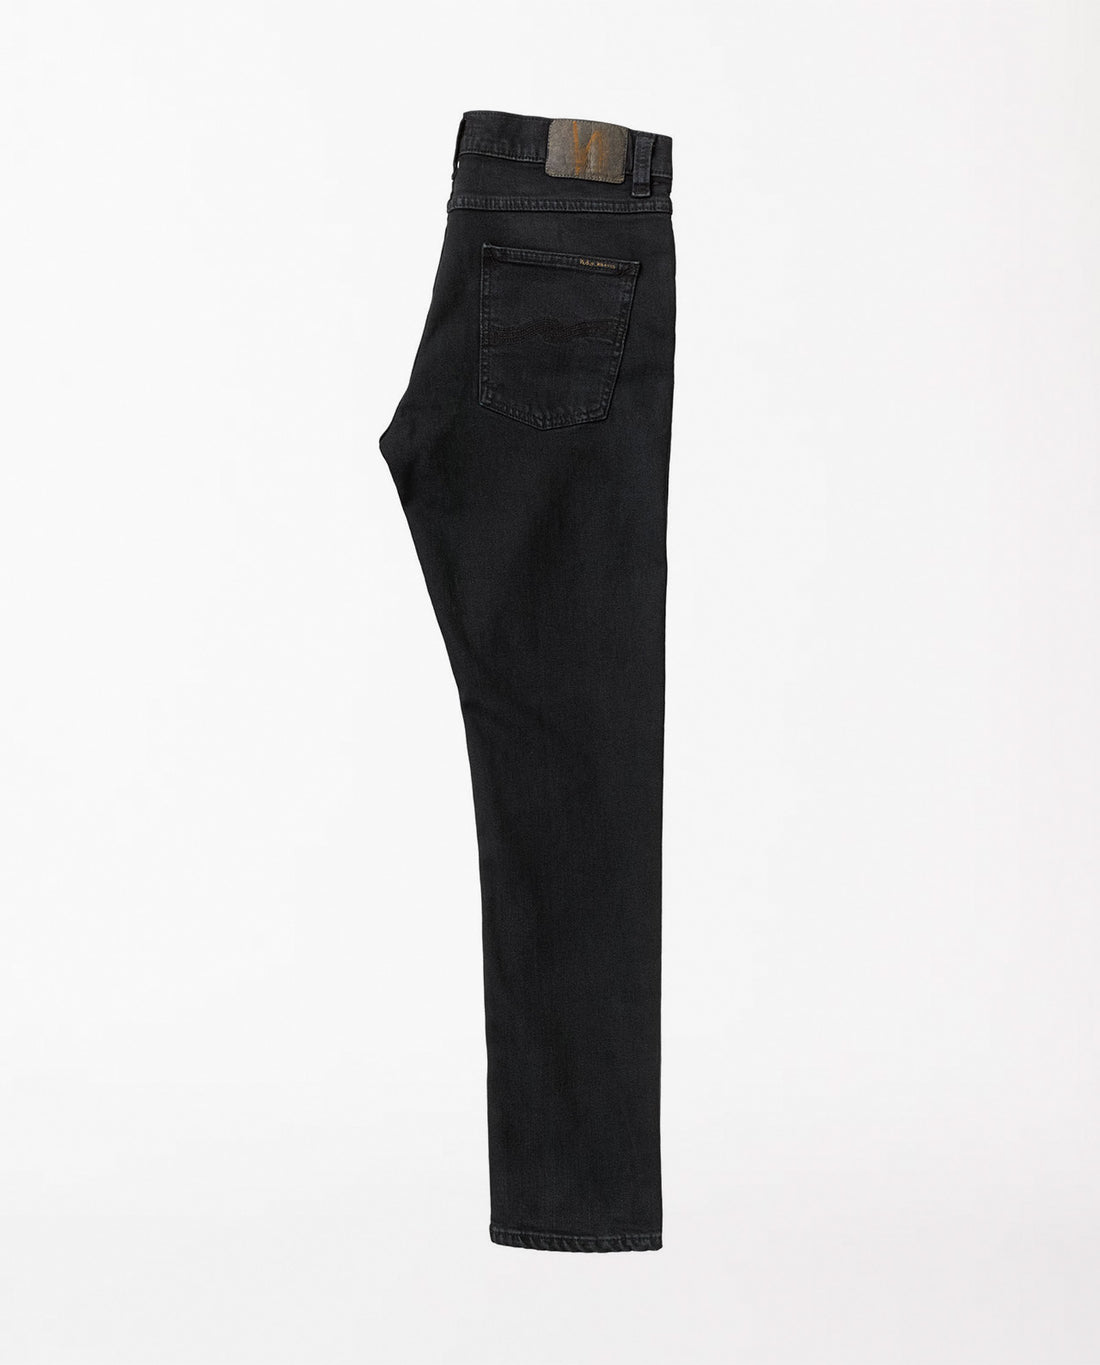 marché commun nudie jeans lean dean black skies noir coton biologique responsable ethique hommes vetements